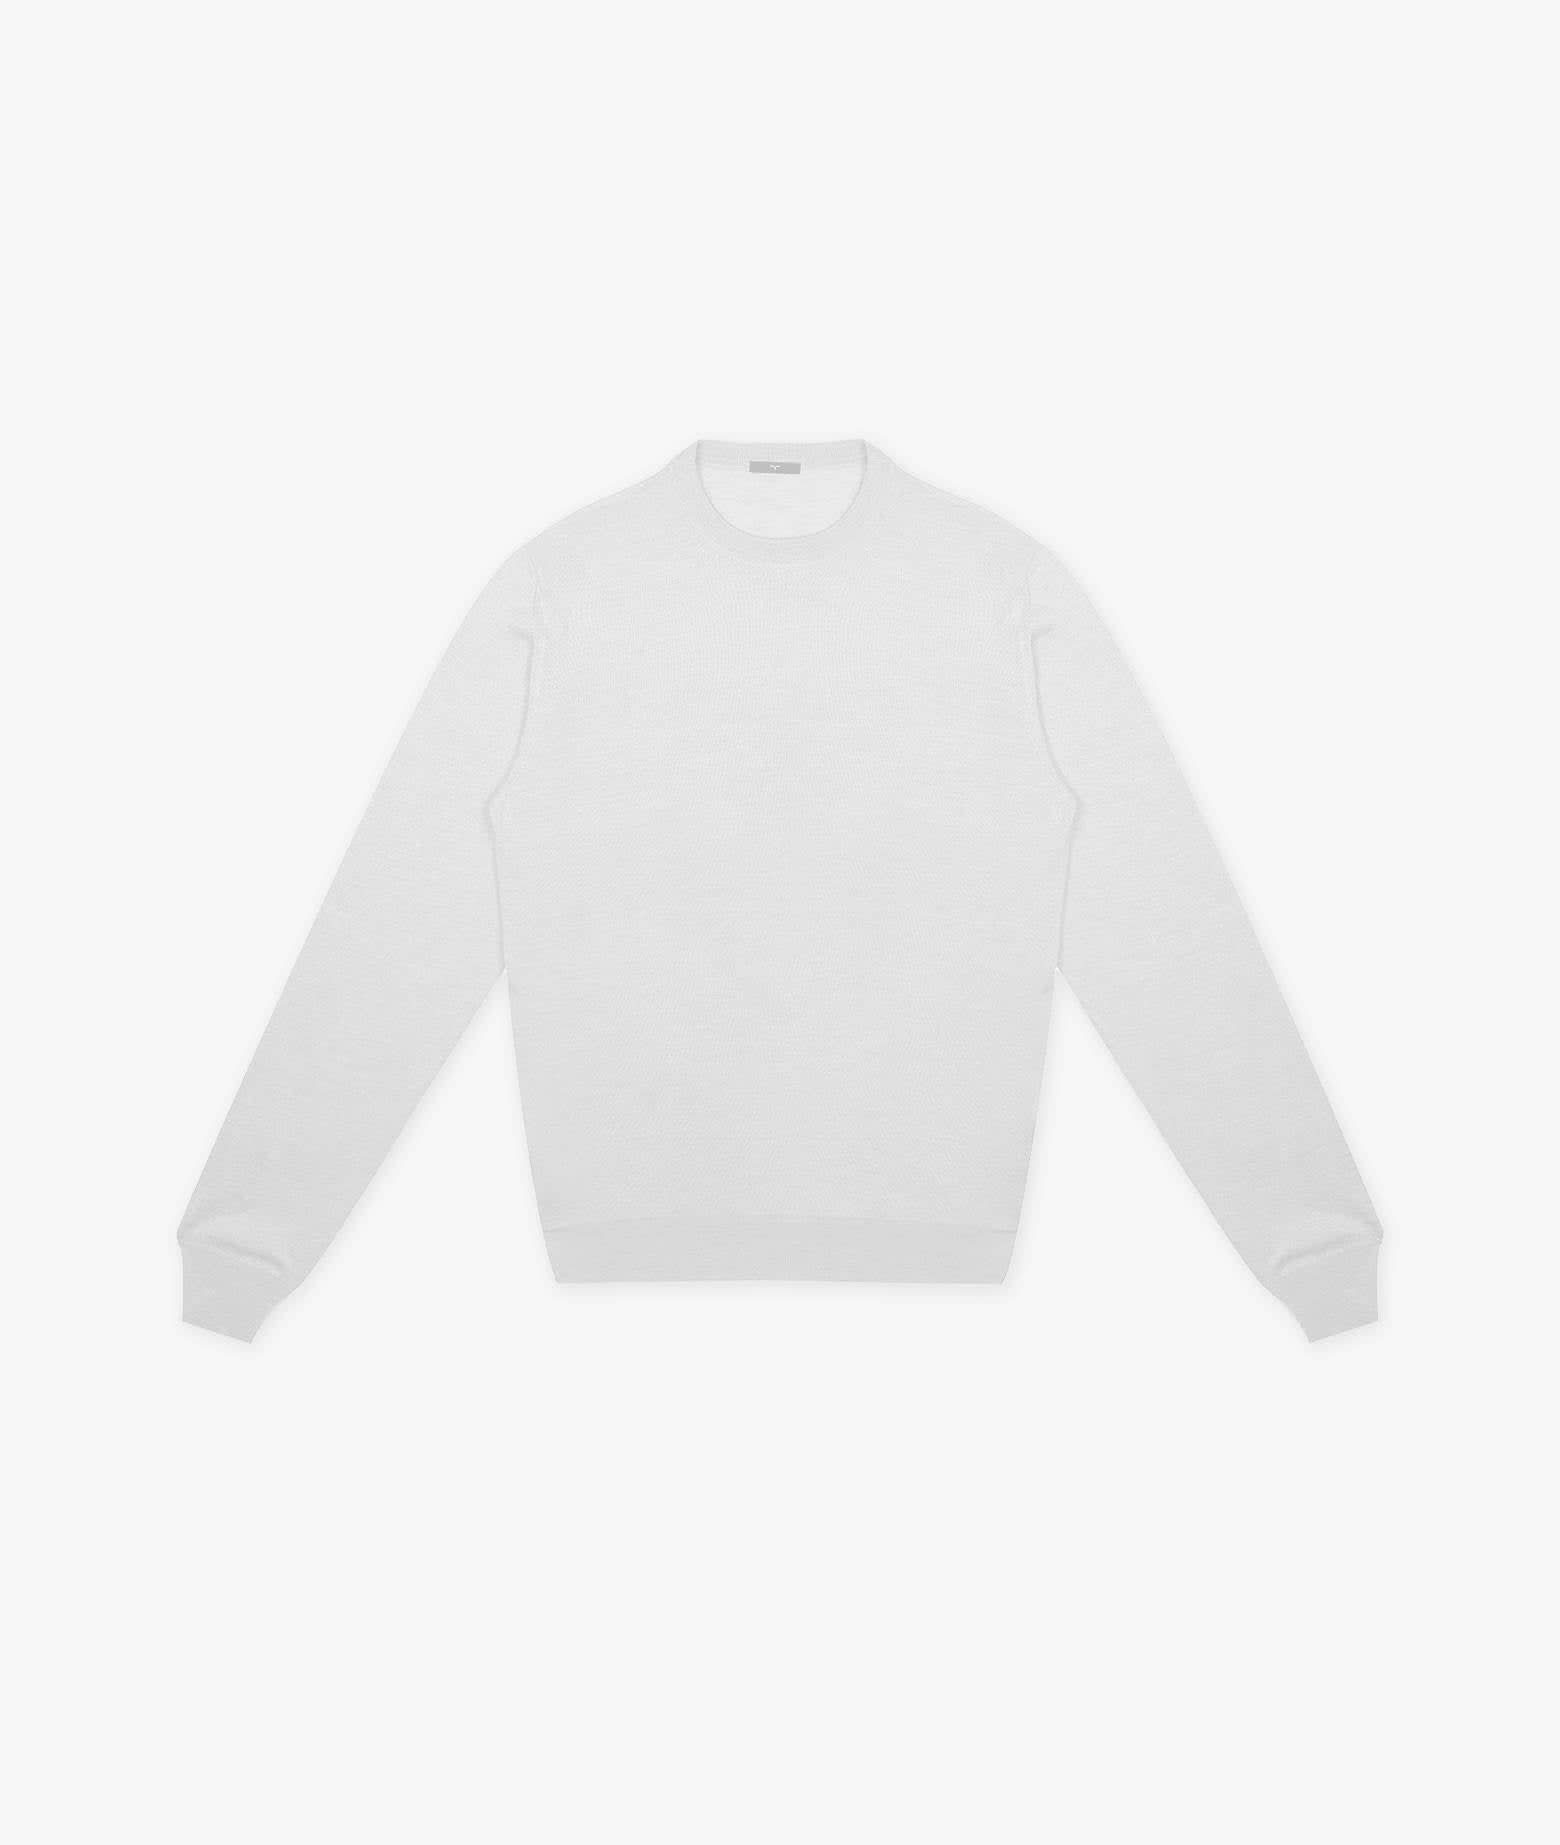 Larusmiani Long-sleeved T-shirt Roquebrune Sweater In White